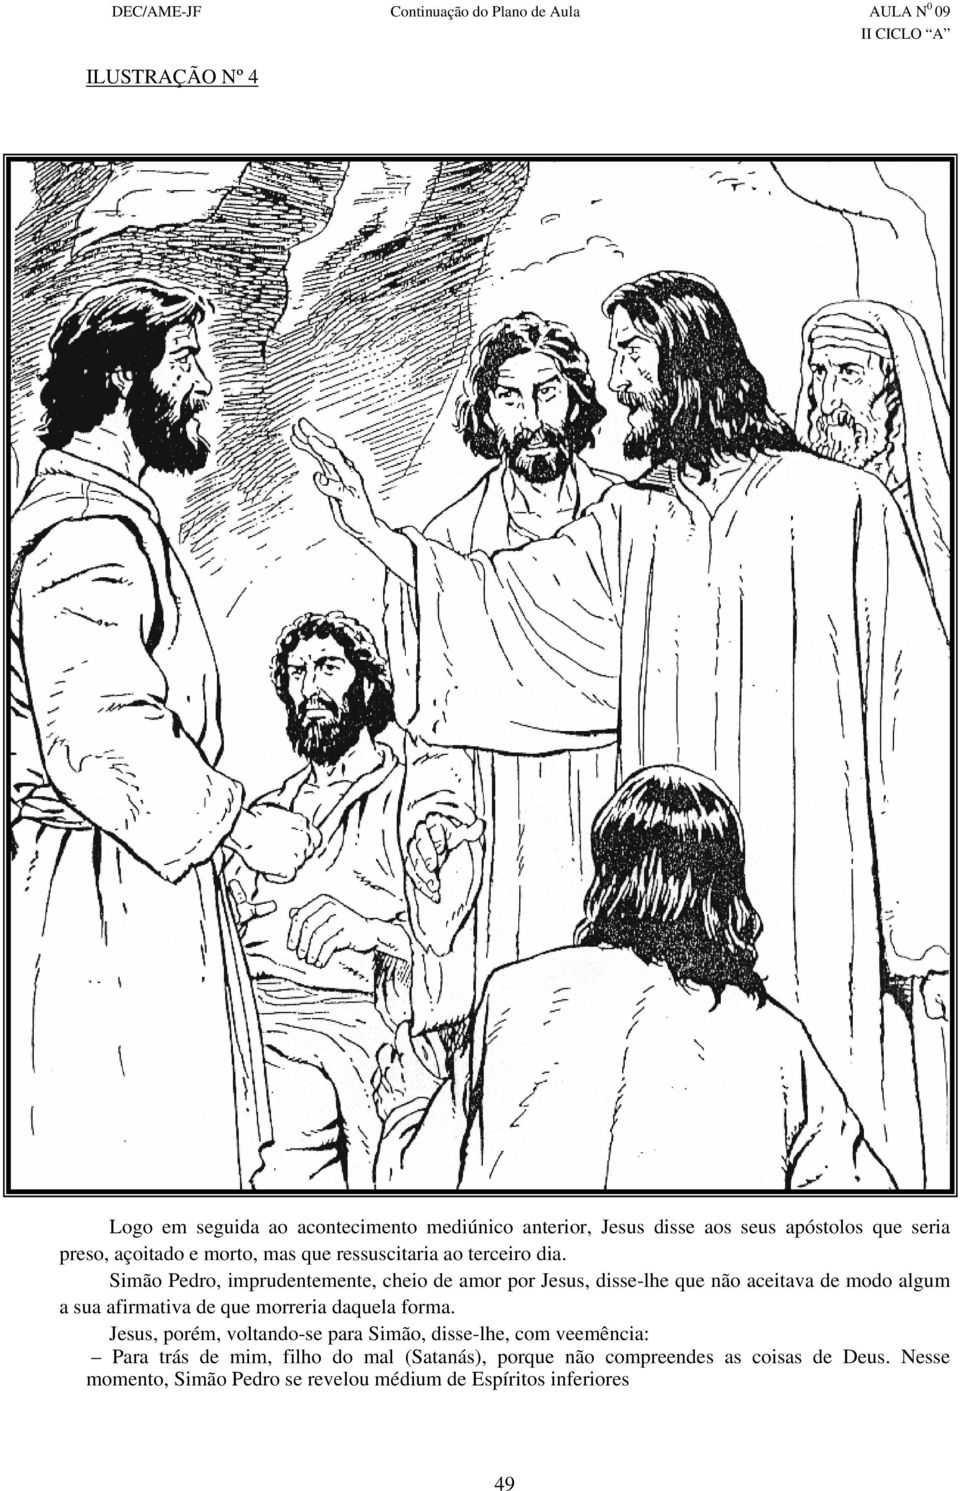 Simão Pedro, imprudentemente, cheio de amor por Jesus, disse-lhe que não aceitava de modo algum a sua afirmativa de que morreria